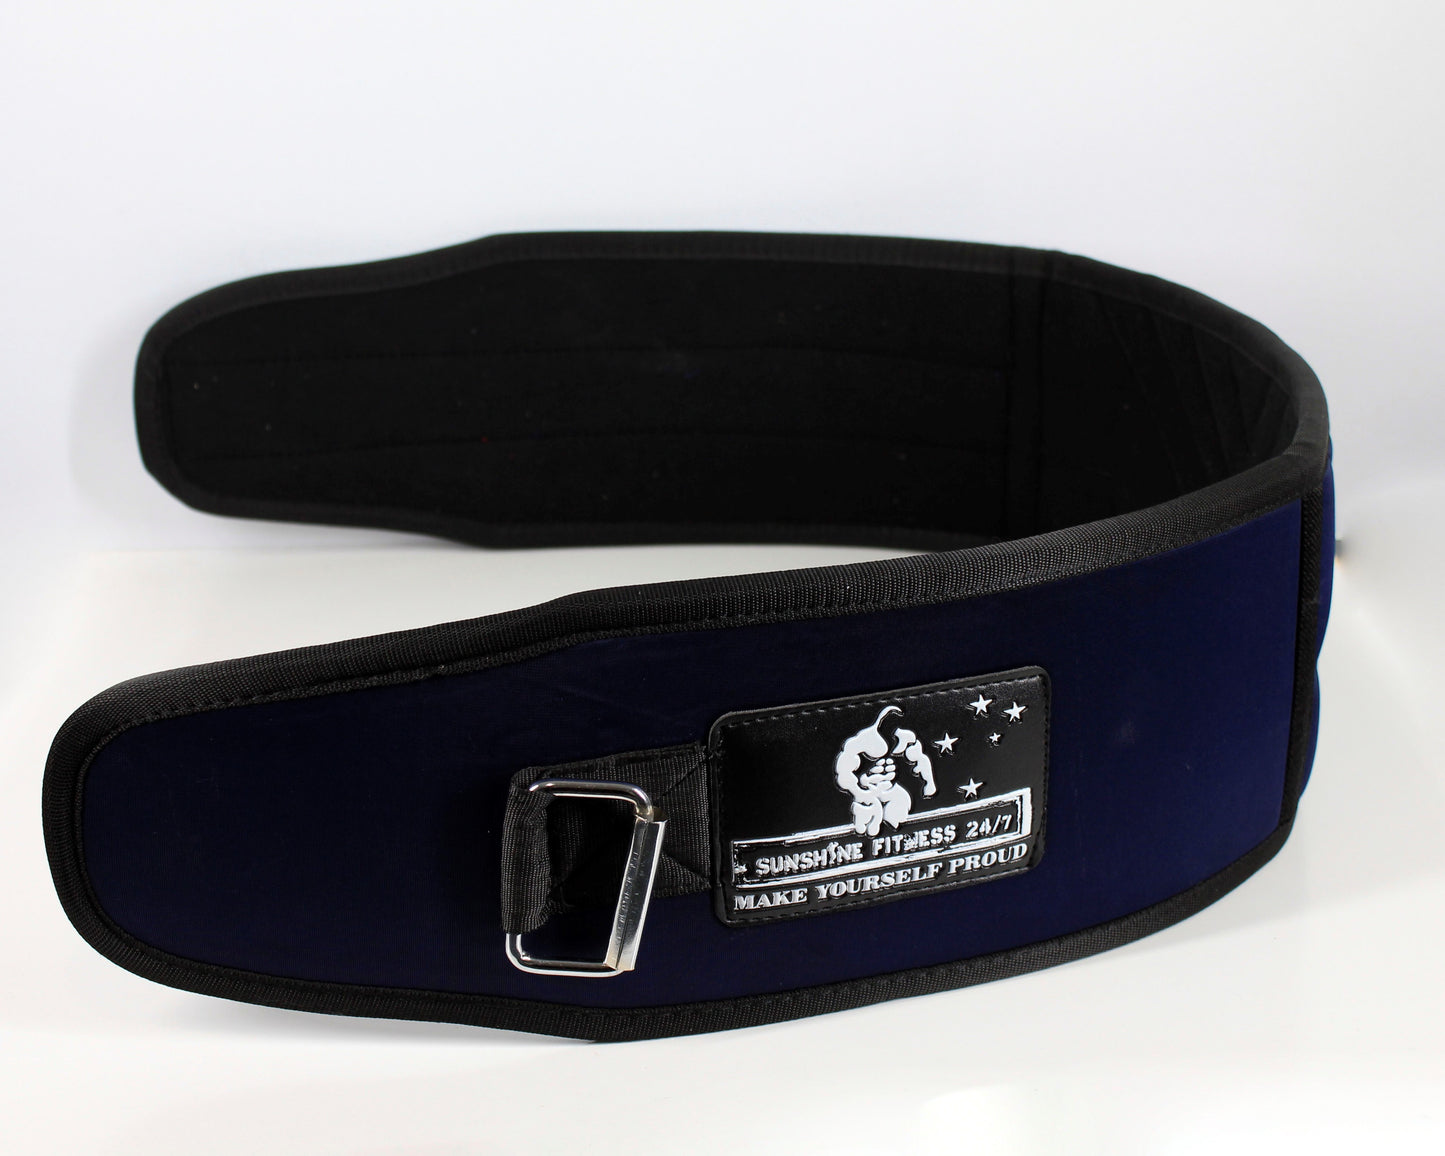 Neoprene belt for lower back support